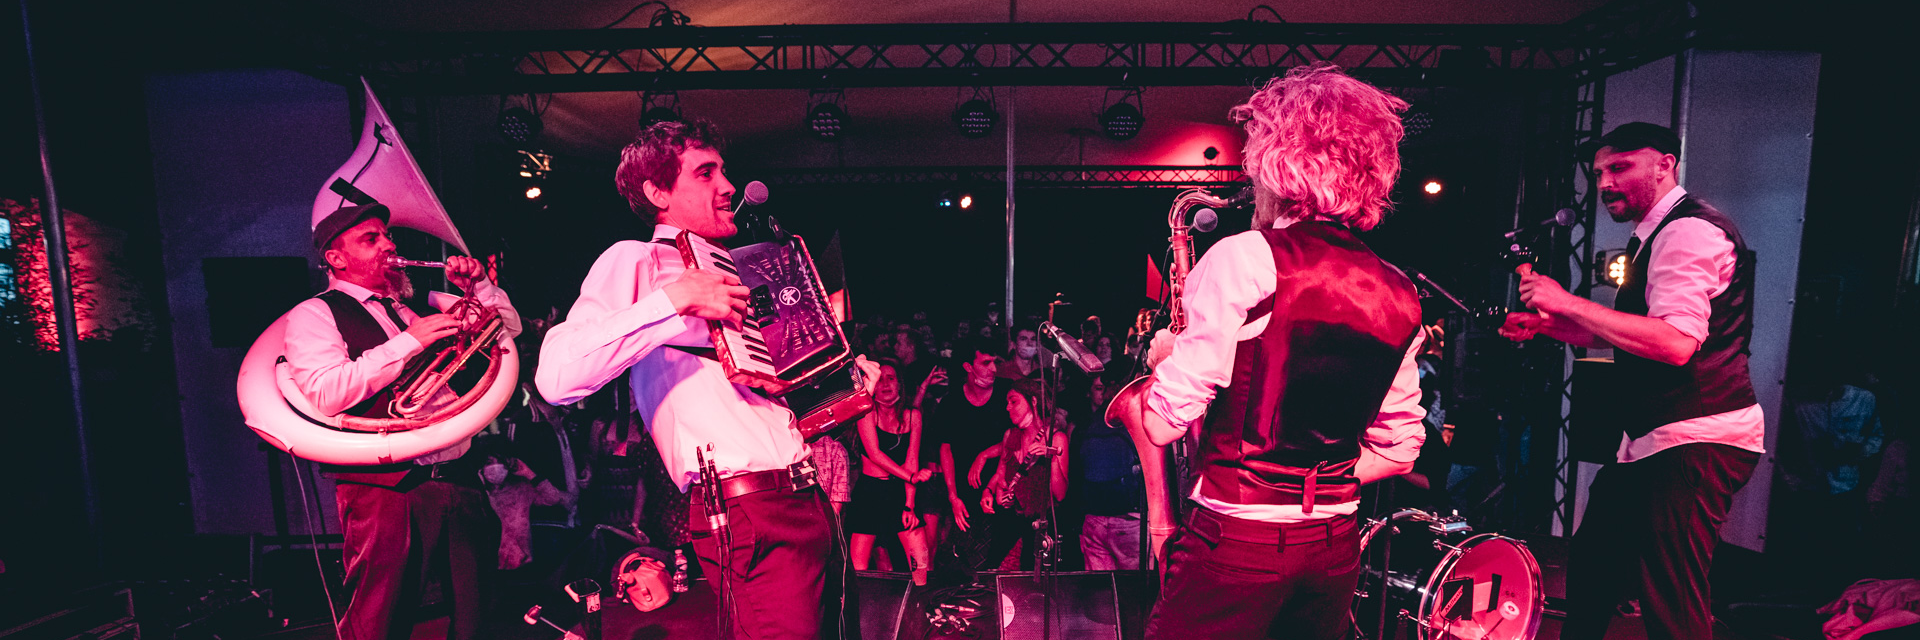 Mafia Wanaca, groupe de musique Cumbia en représentation à Hérault - photo de couverture